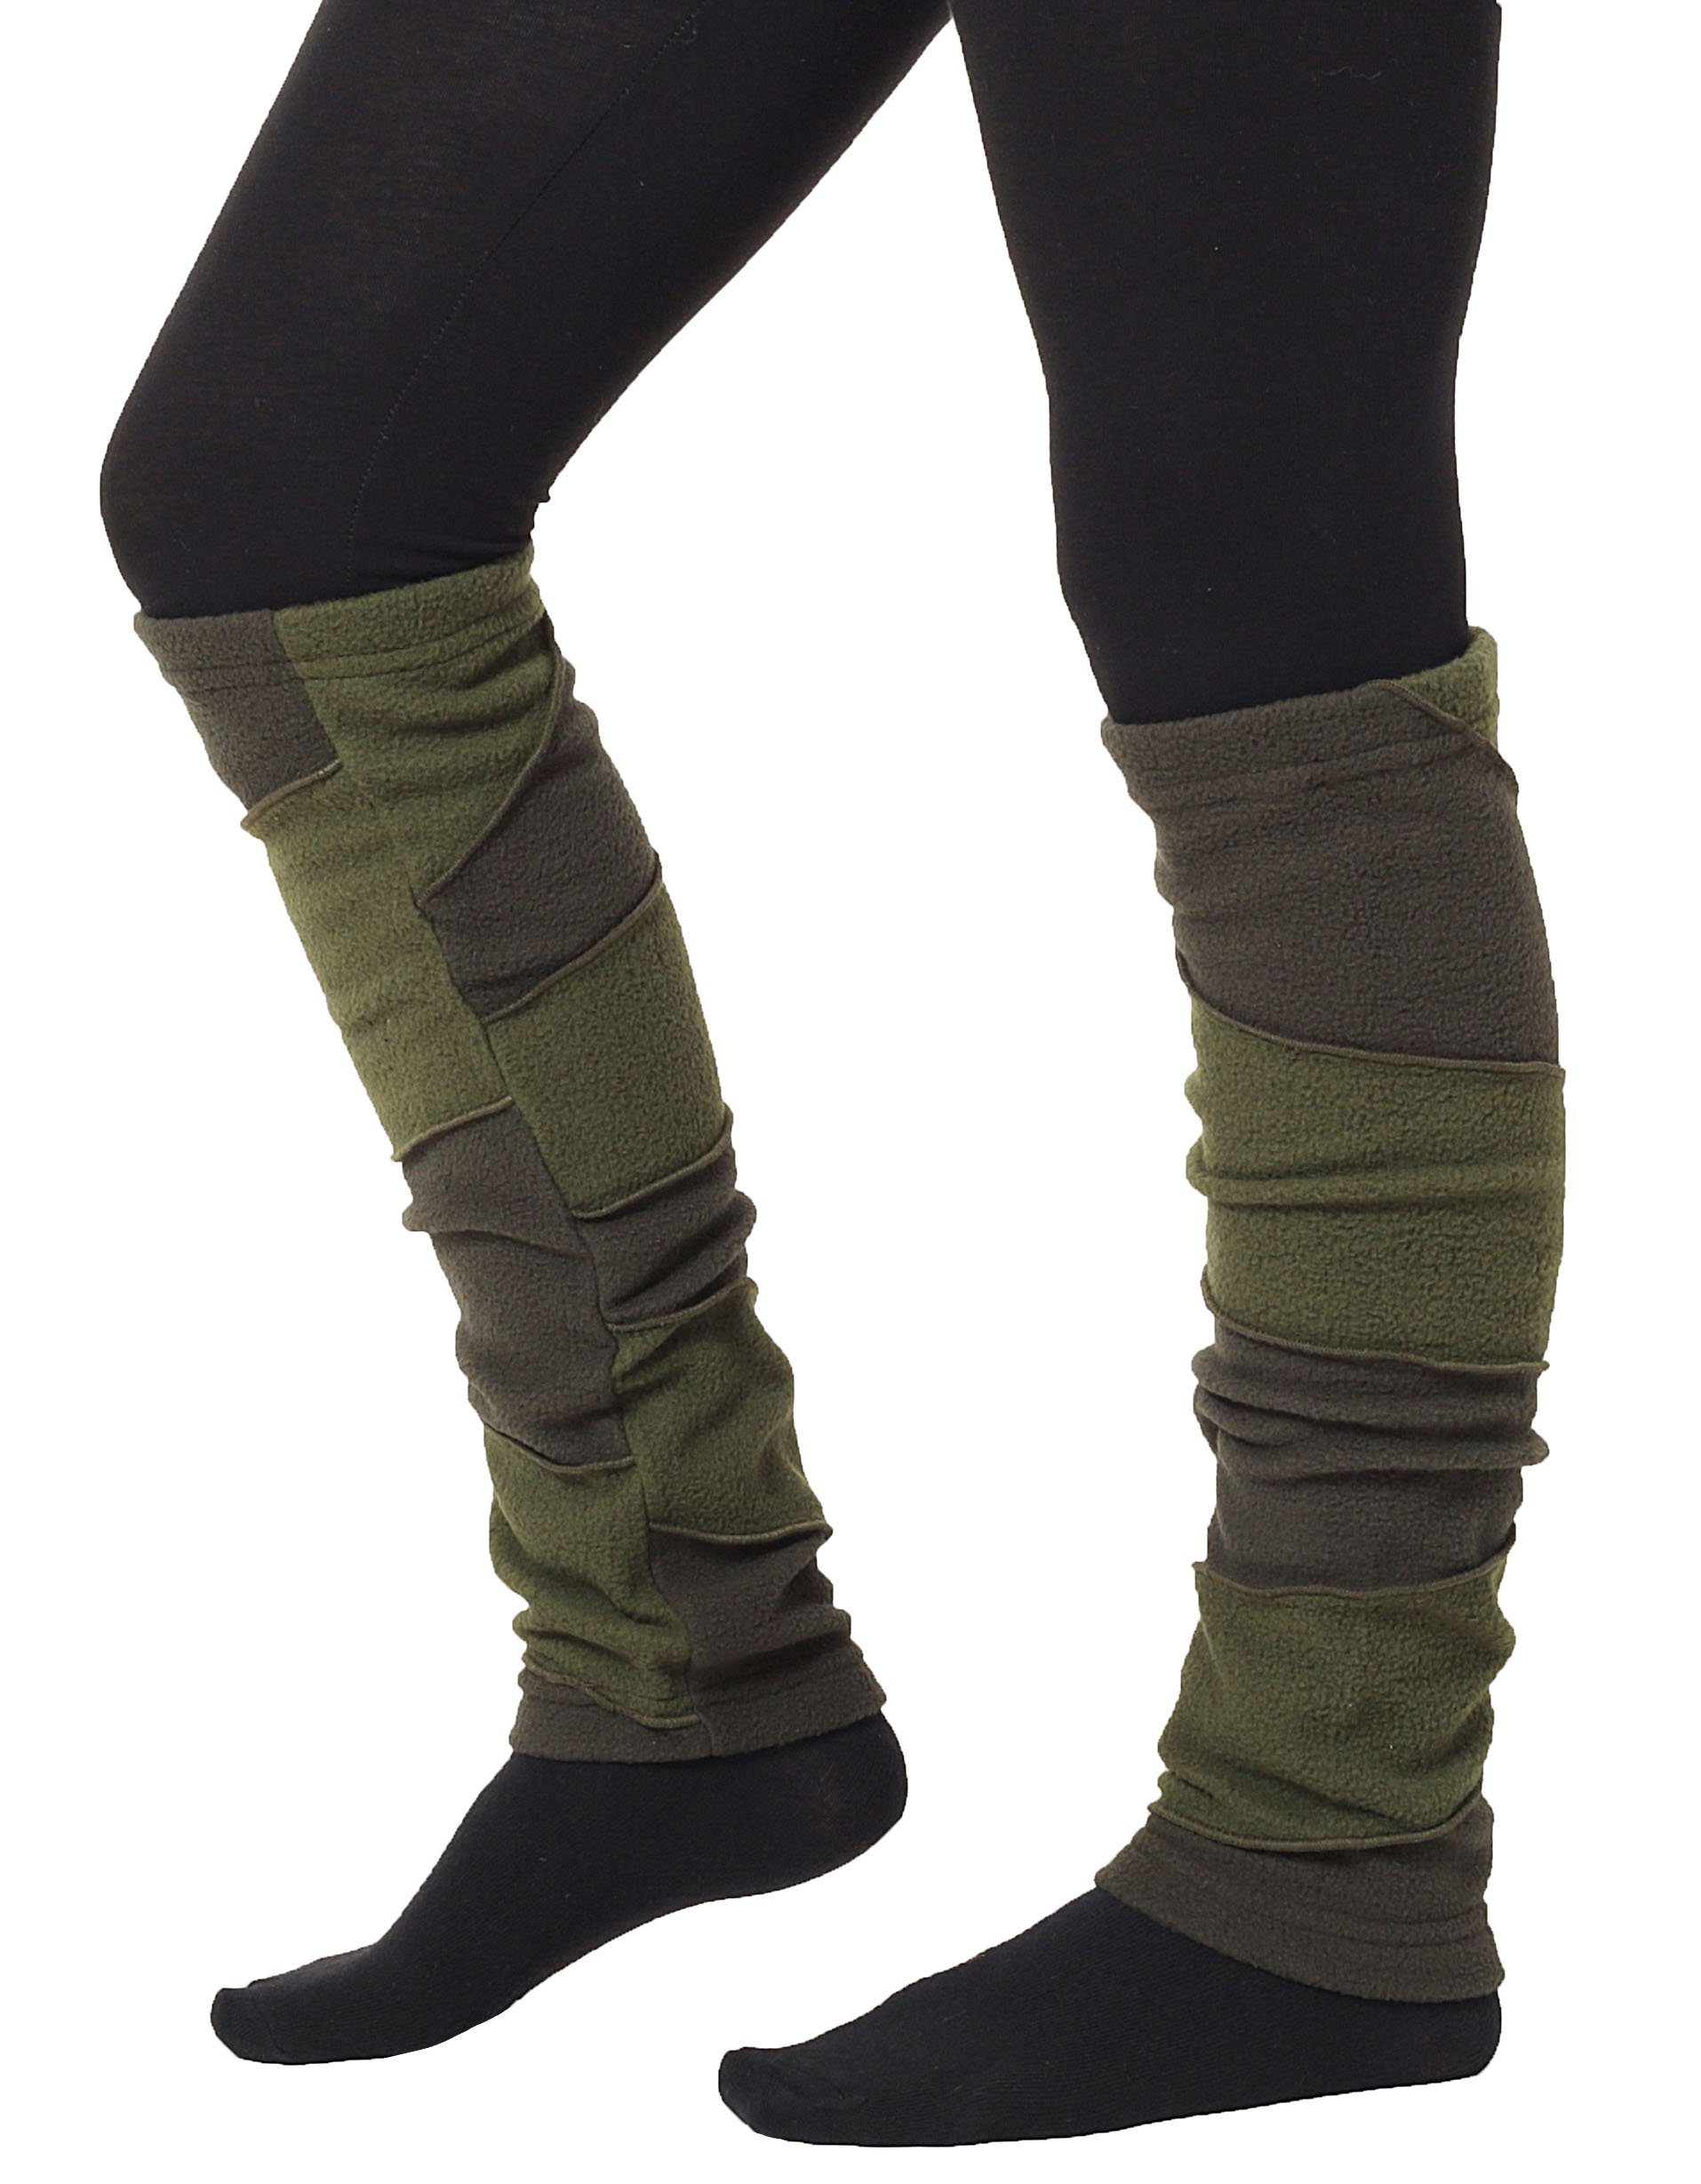 Sonderaktion PUREWONDER Beinstulpen Stulpen zweifarbig aus Fleece lw27 Grün (1 Einheitsgröße Paar)